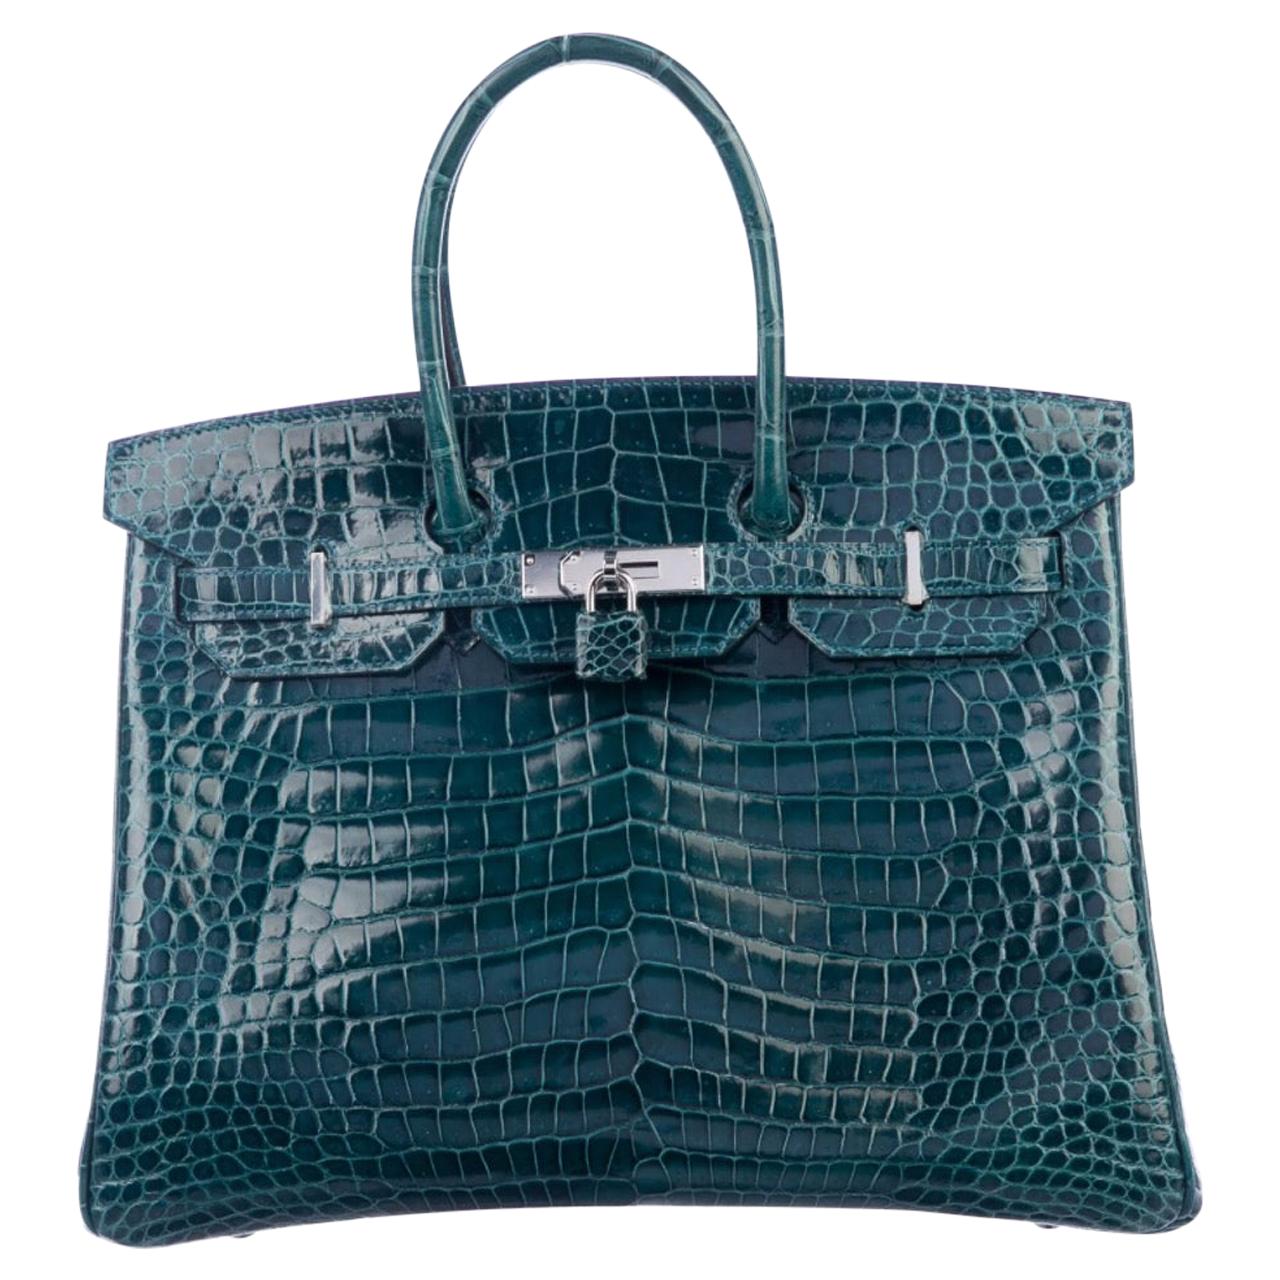 Hermes Birkin 35 Teal Crocodile Palladium Exotic Top Handle Satchel Tote Bag 